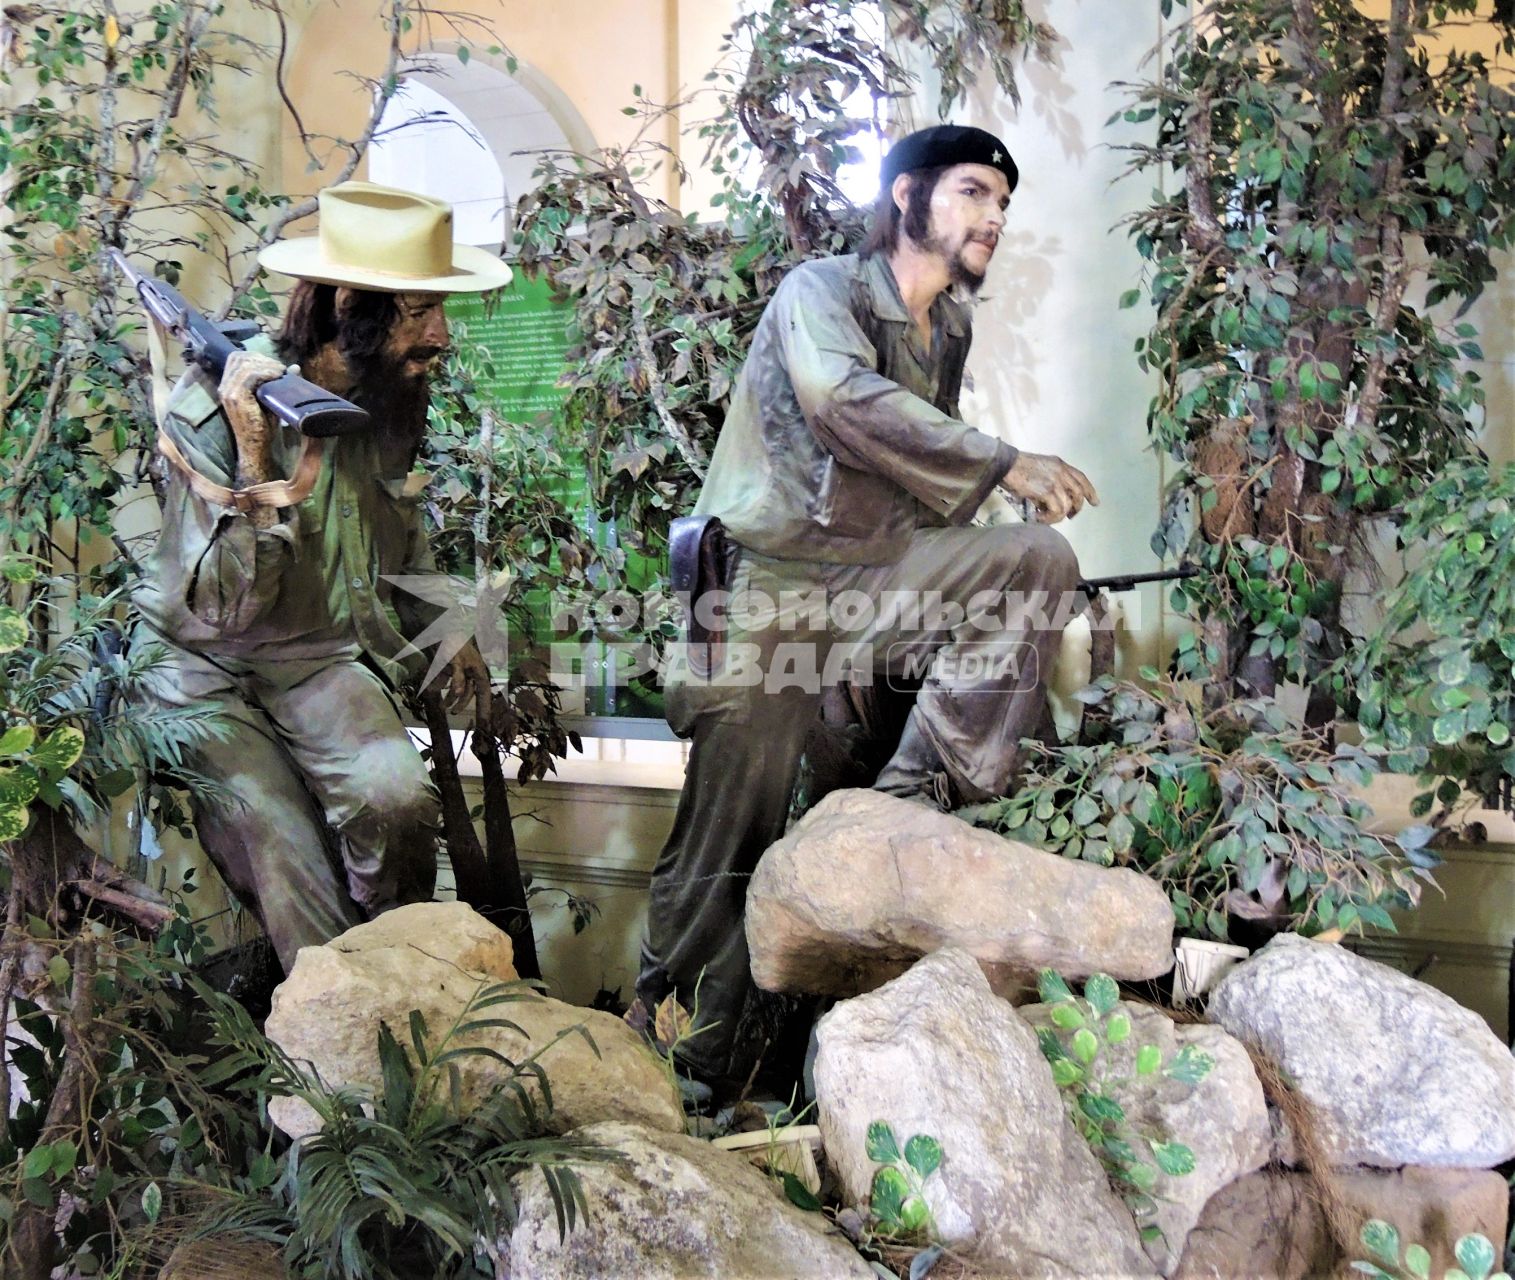 Куба. Гавана. Экспозиция, посвященная Фиделю Кастро и Эрнесто Че Гевара в музее.